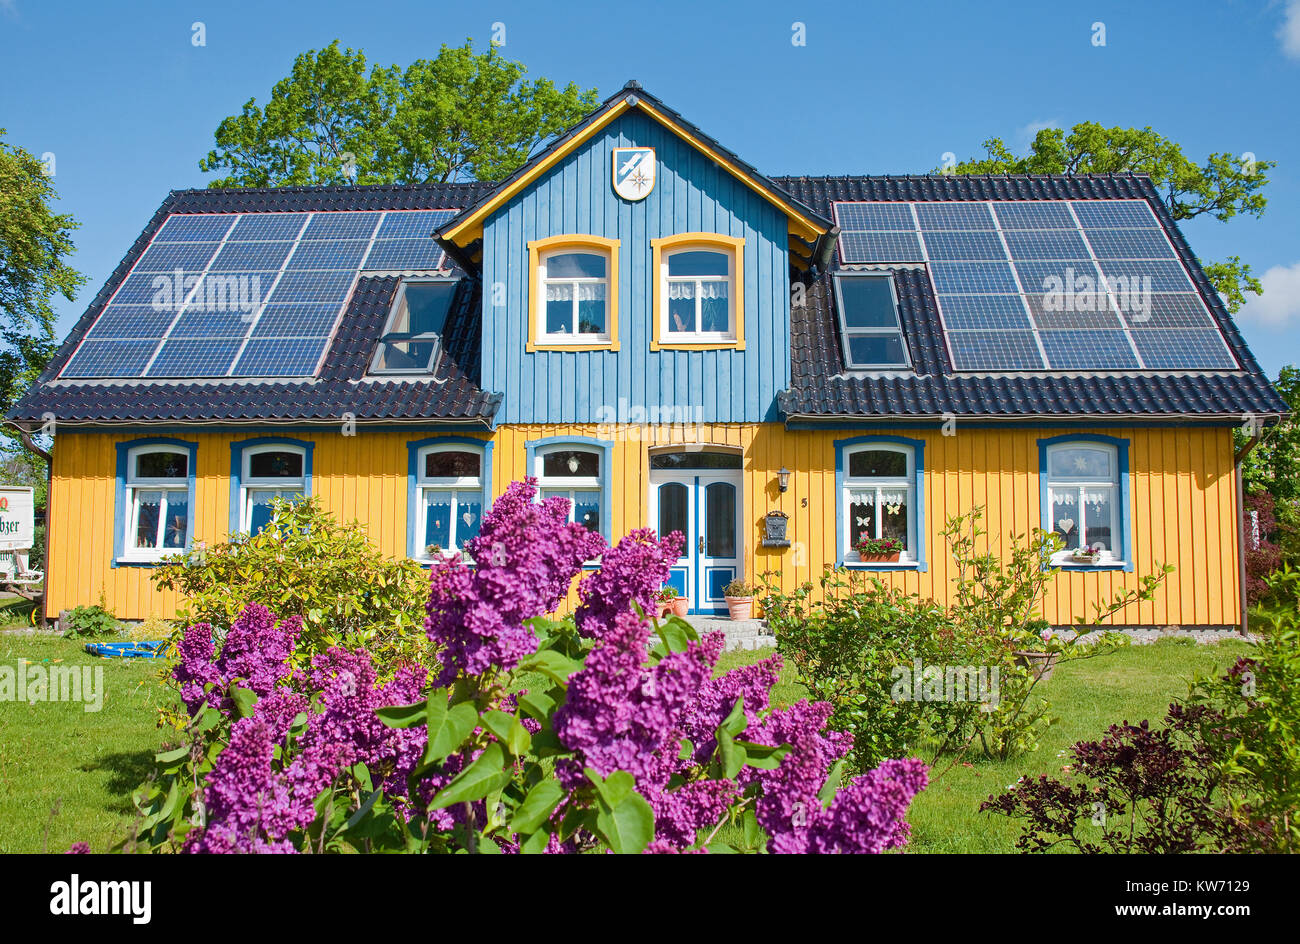 Casa de madera con células fotovoltaicas en el techo, nacido en aldea, Fischland Darss, Mecklemburgo-Pomerania Occidental, Mar Báltico, Alemania, Europa Foto de stock